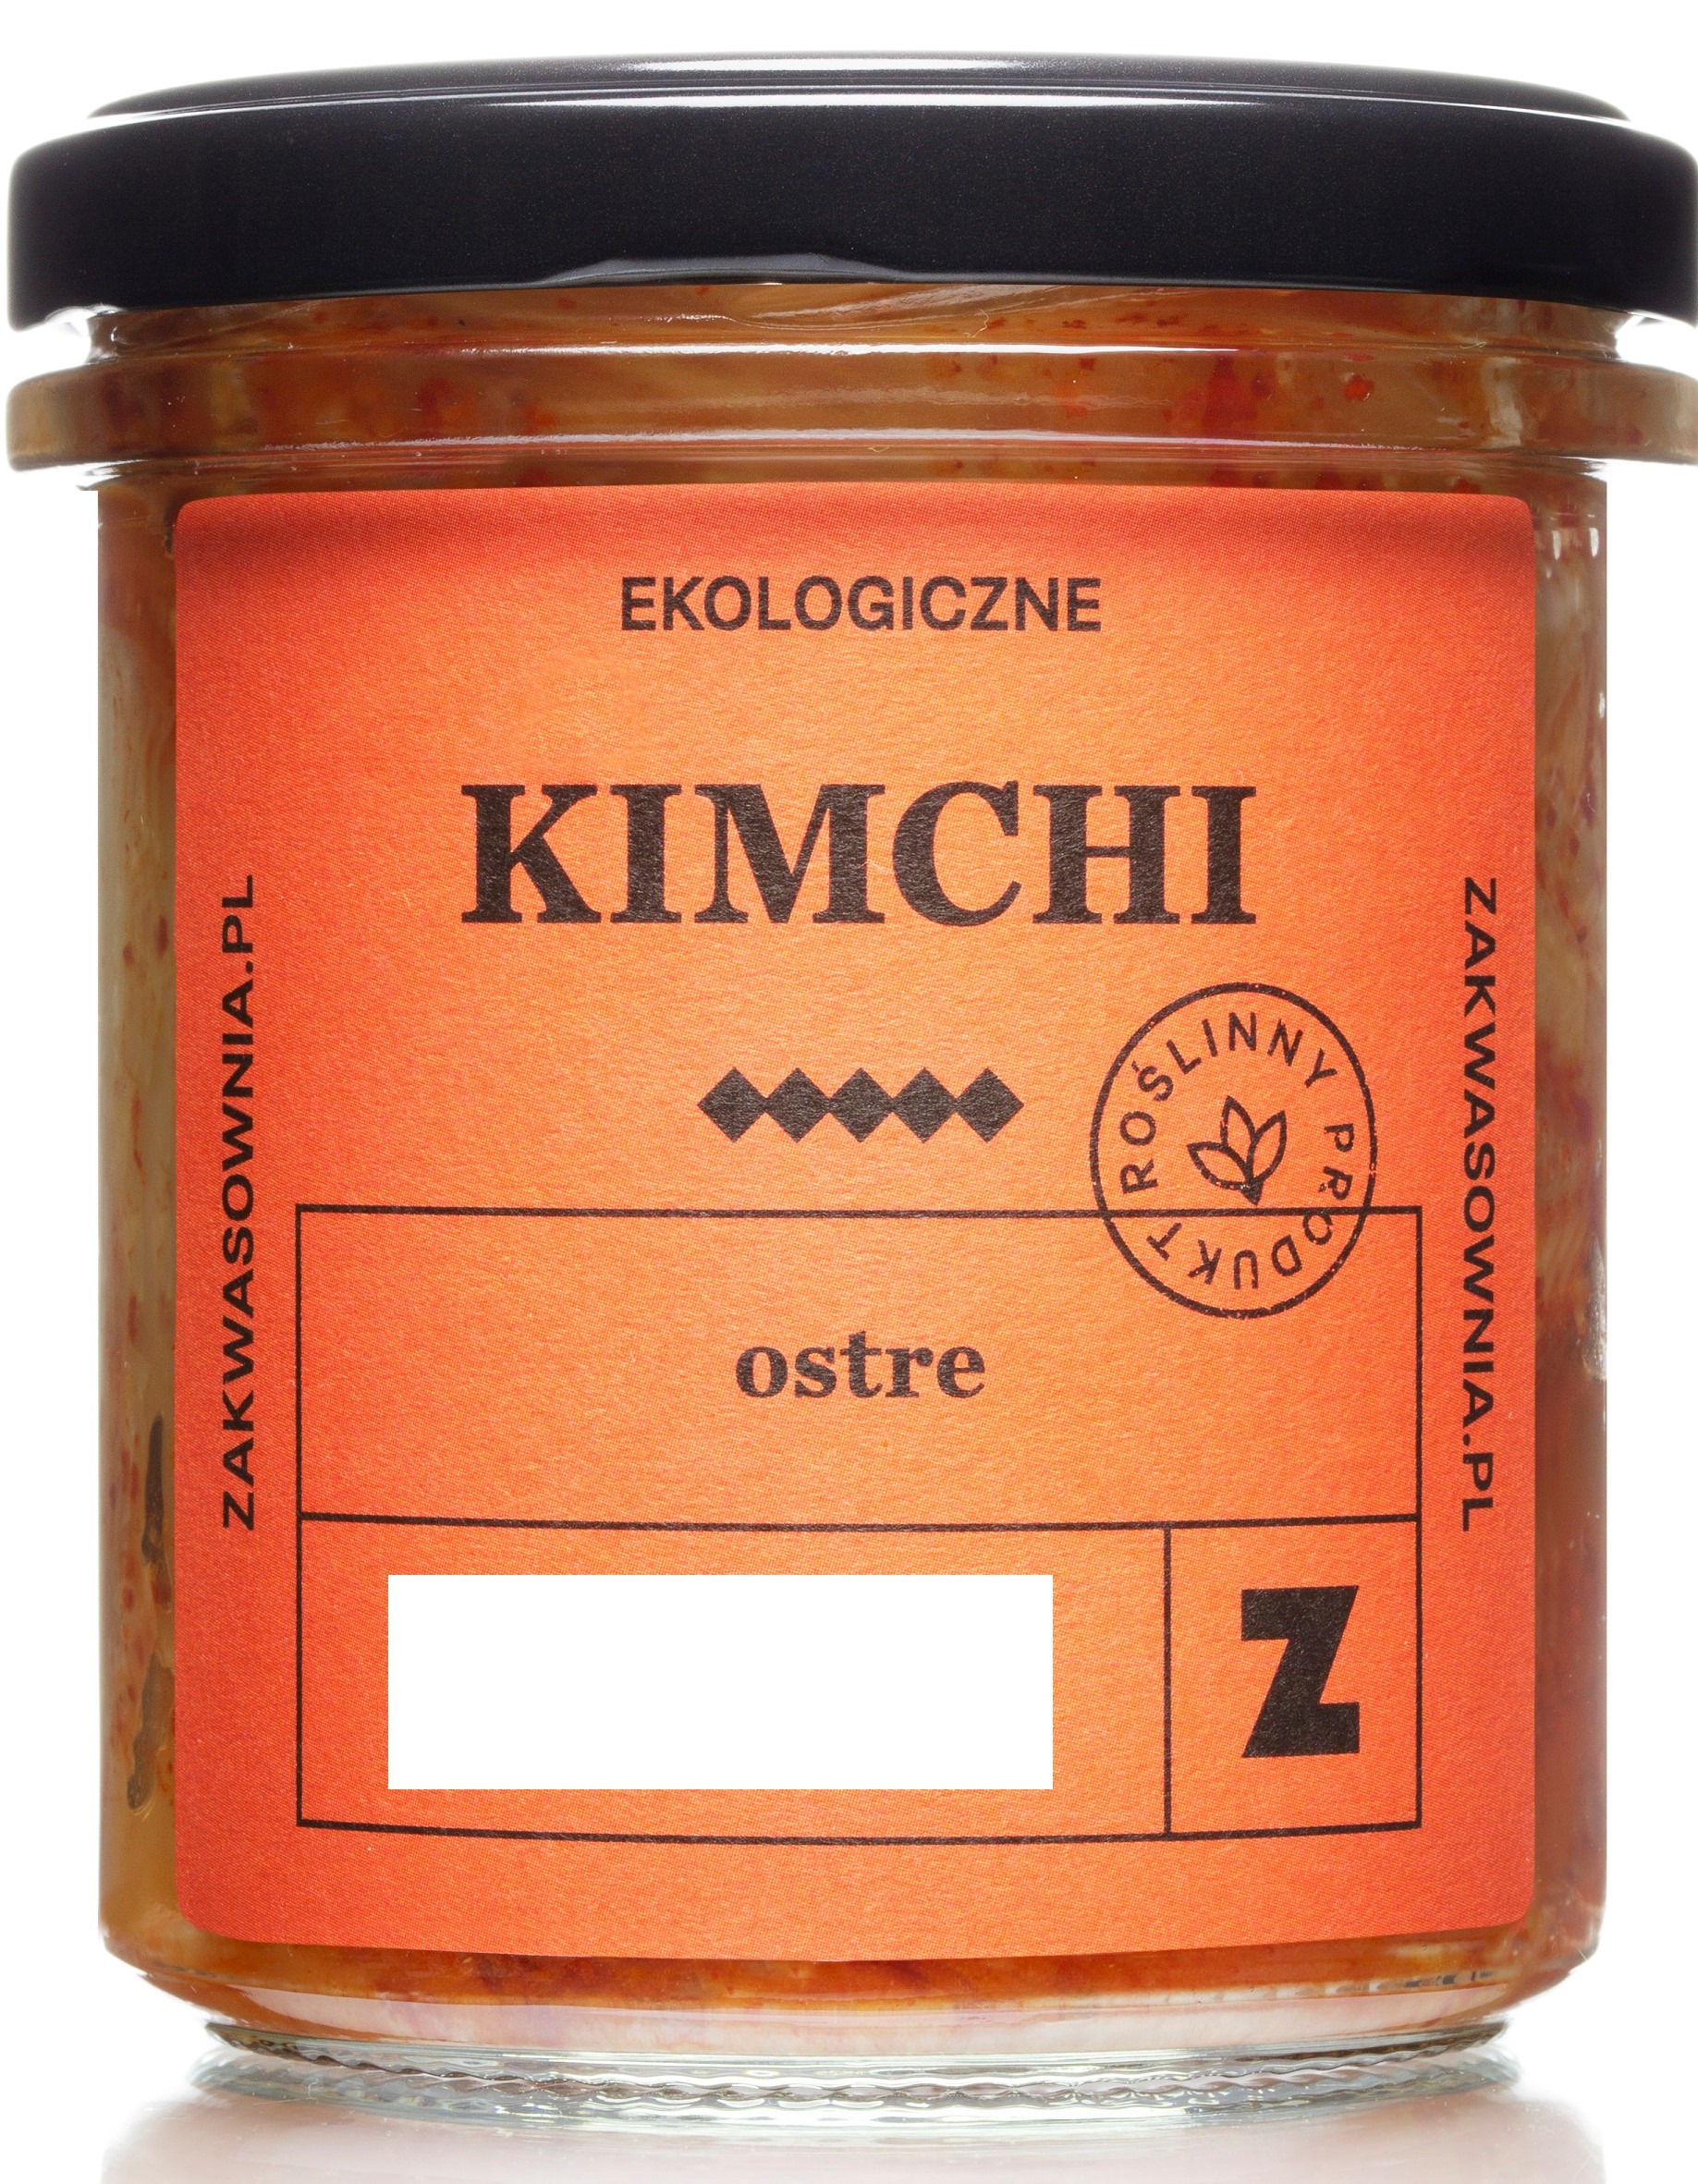 Zakwasownia Kimchi ostre